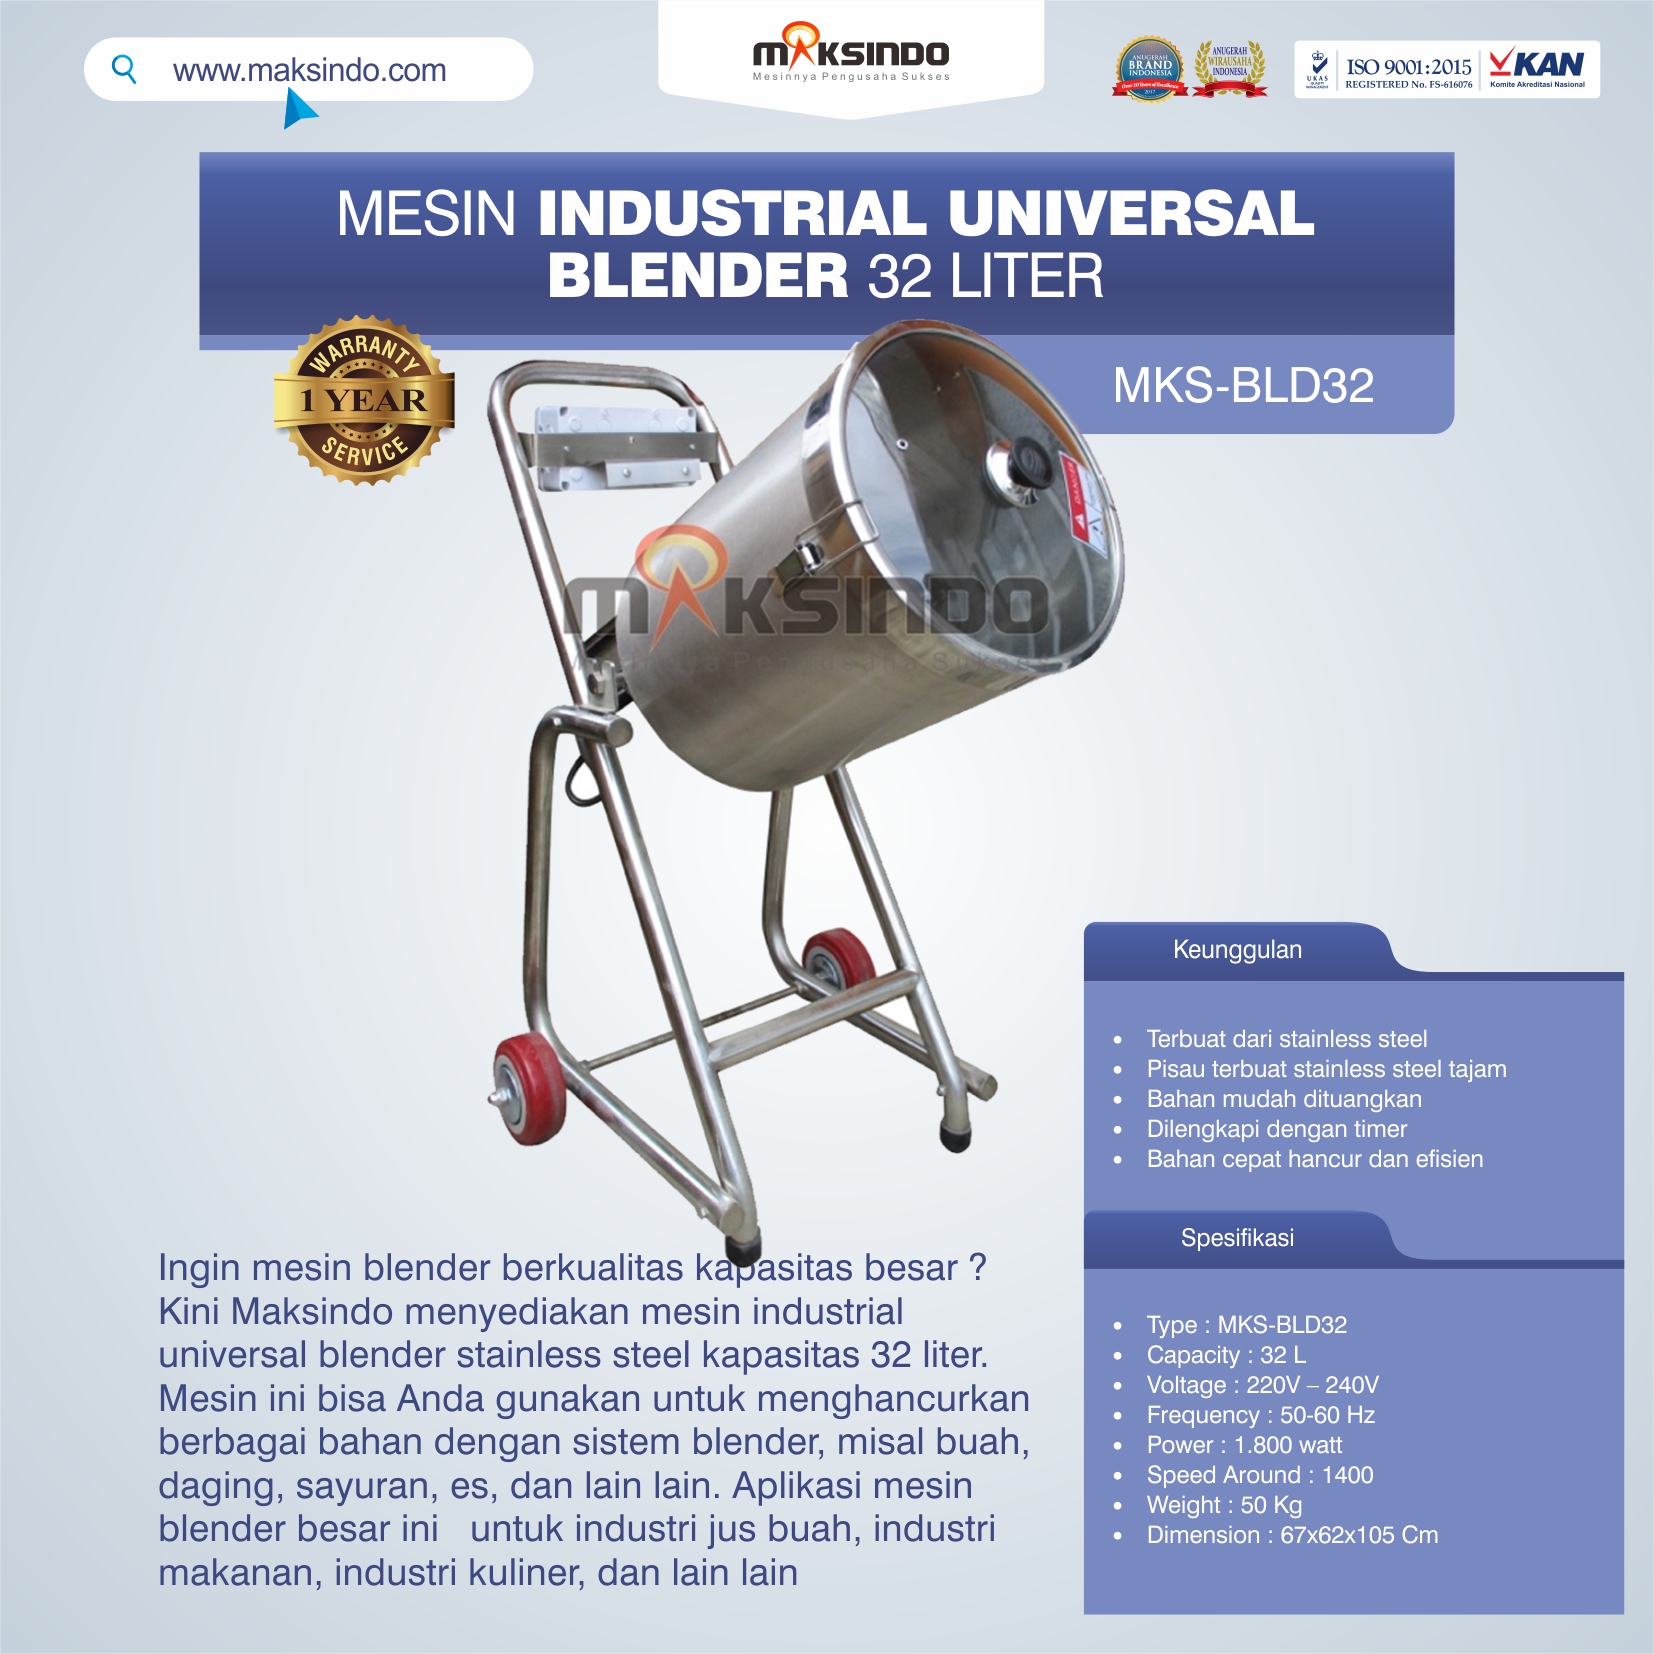 Jual Industrial Universal Blender 32 Liter di Medan